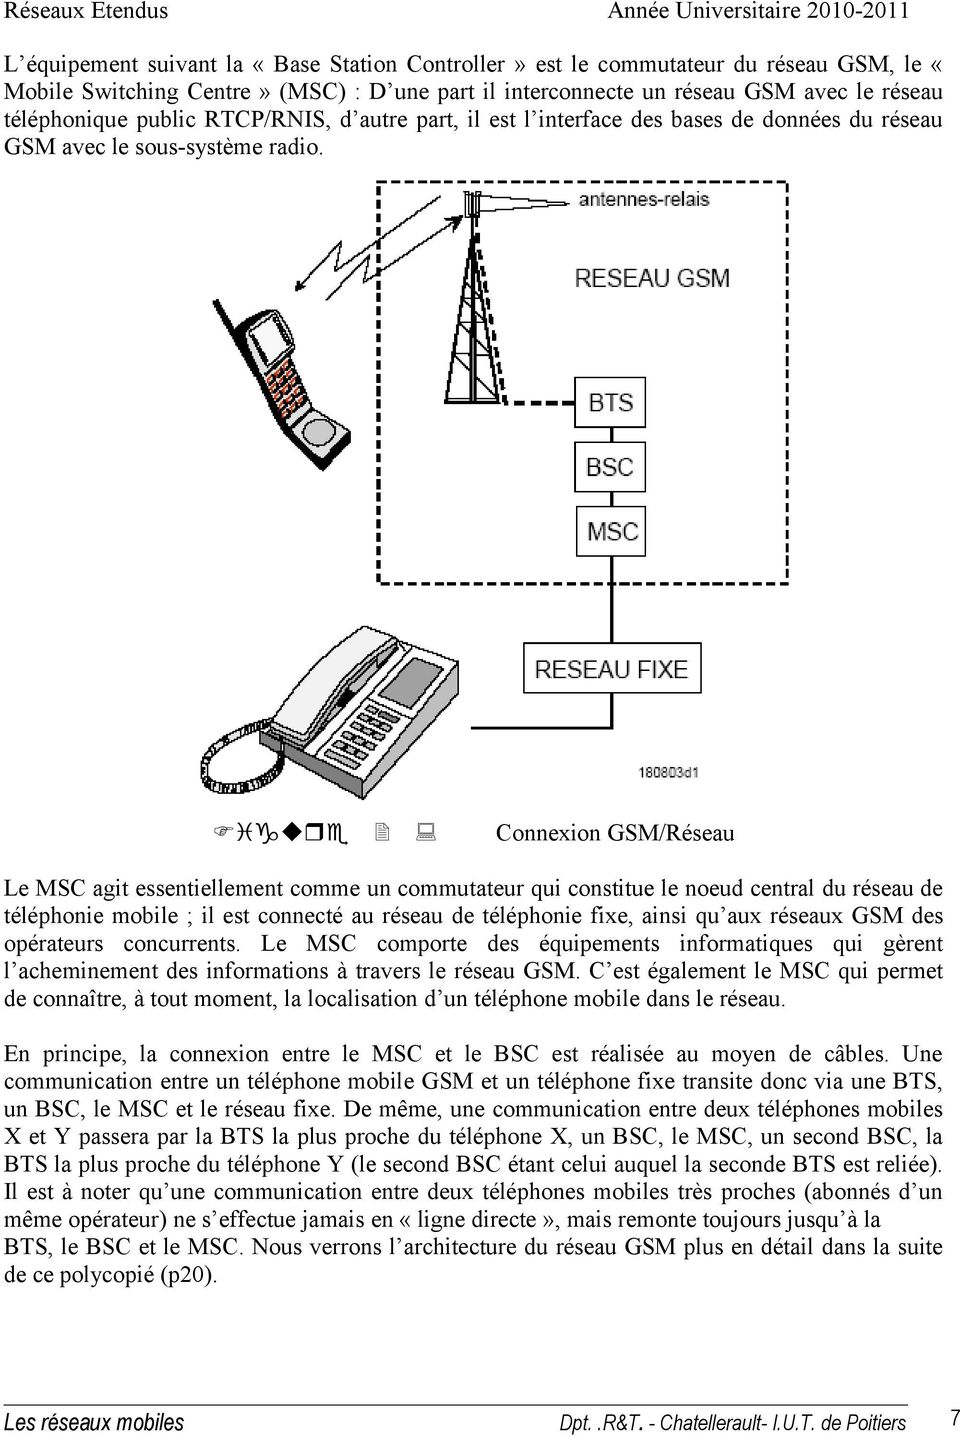 Figure 2 : Connexion GSM/Réseau Le MSC agit essentiellement comme un commutateur qui constitue le noeud central du réseau de téléphonie mobile ; il est connecté au réseau de téléphonie fixe, ainsi qu